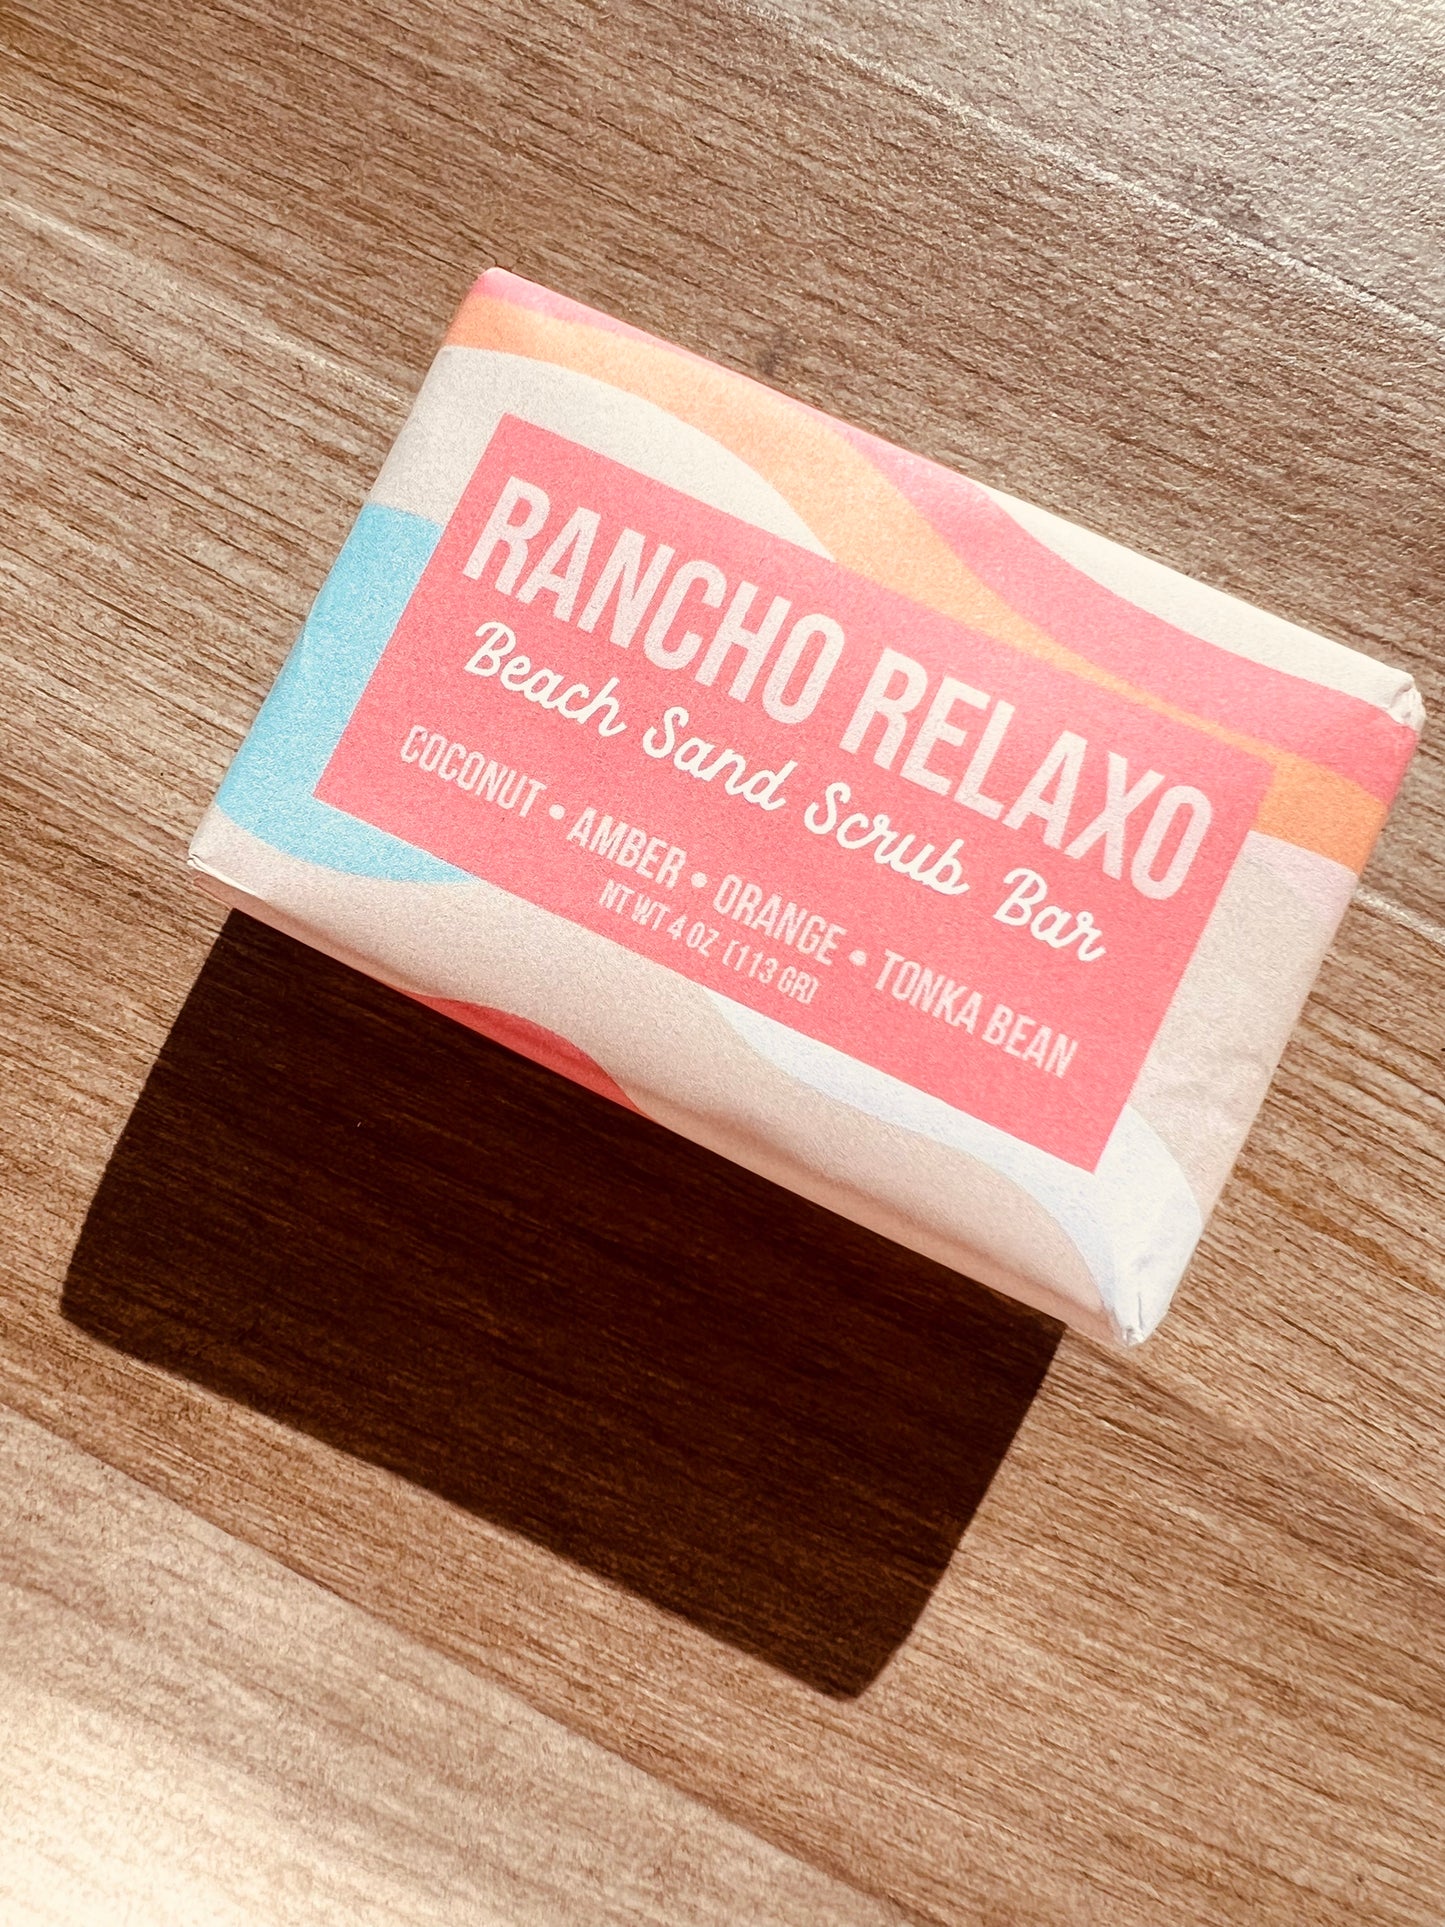 Soap Bar - Rancho Relaxo